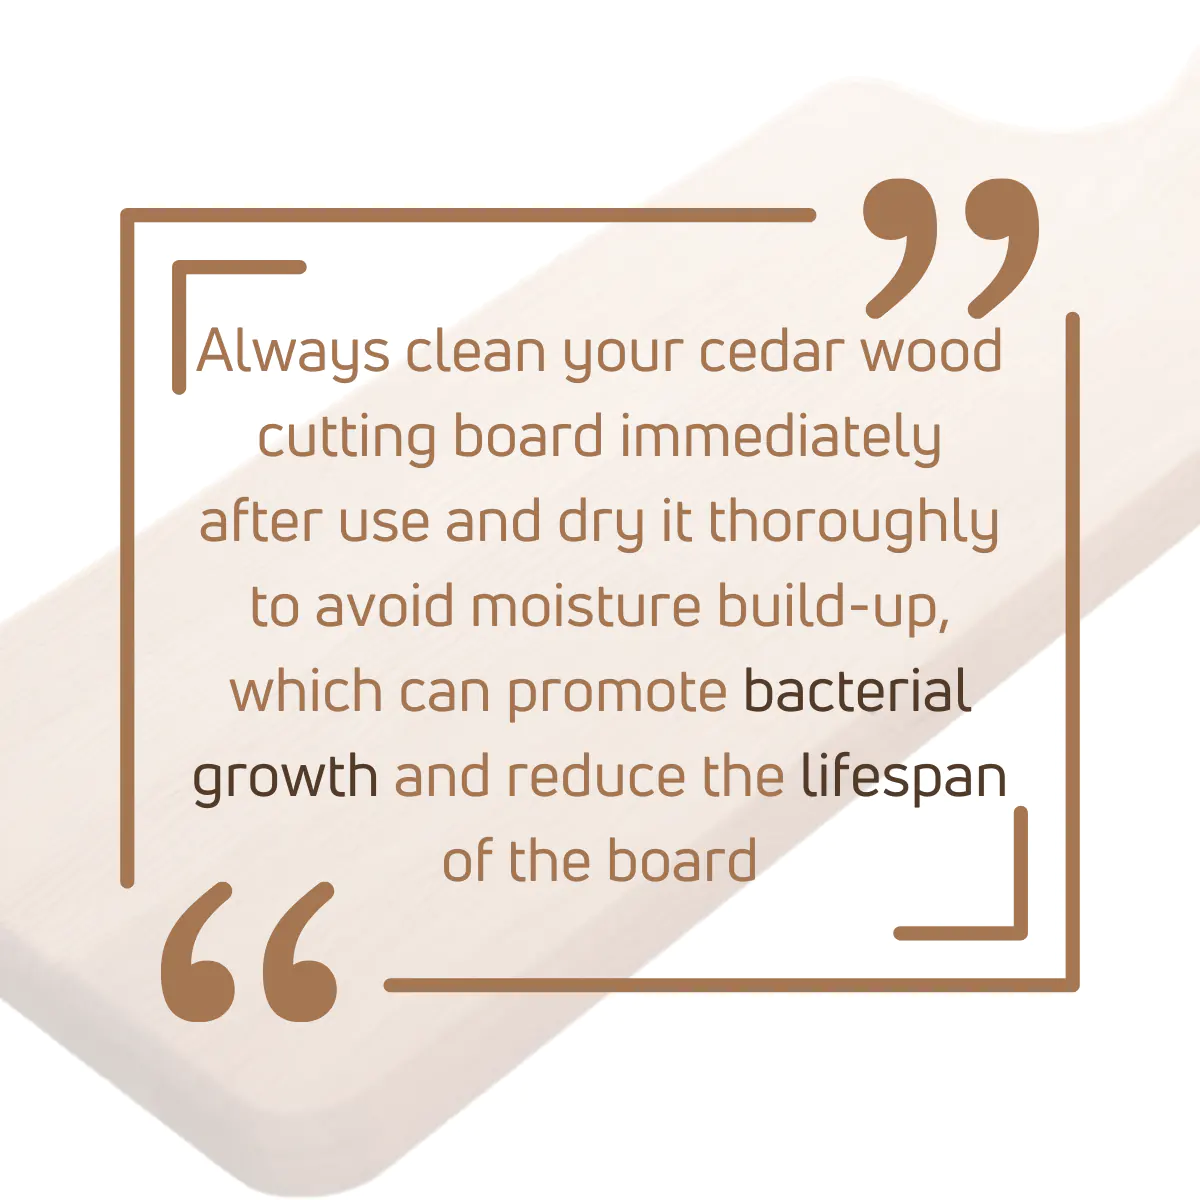 Tip using cedar wood for cutting boards